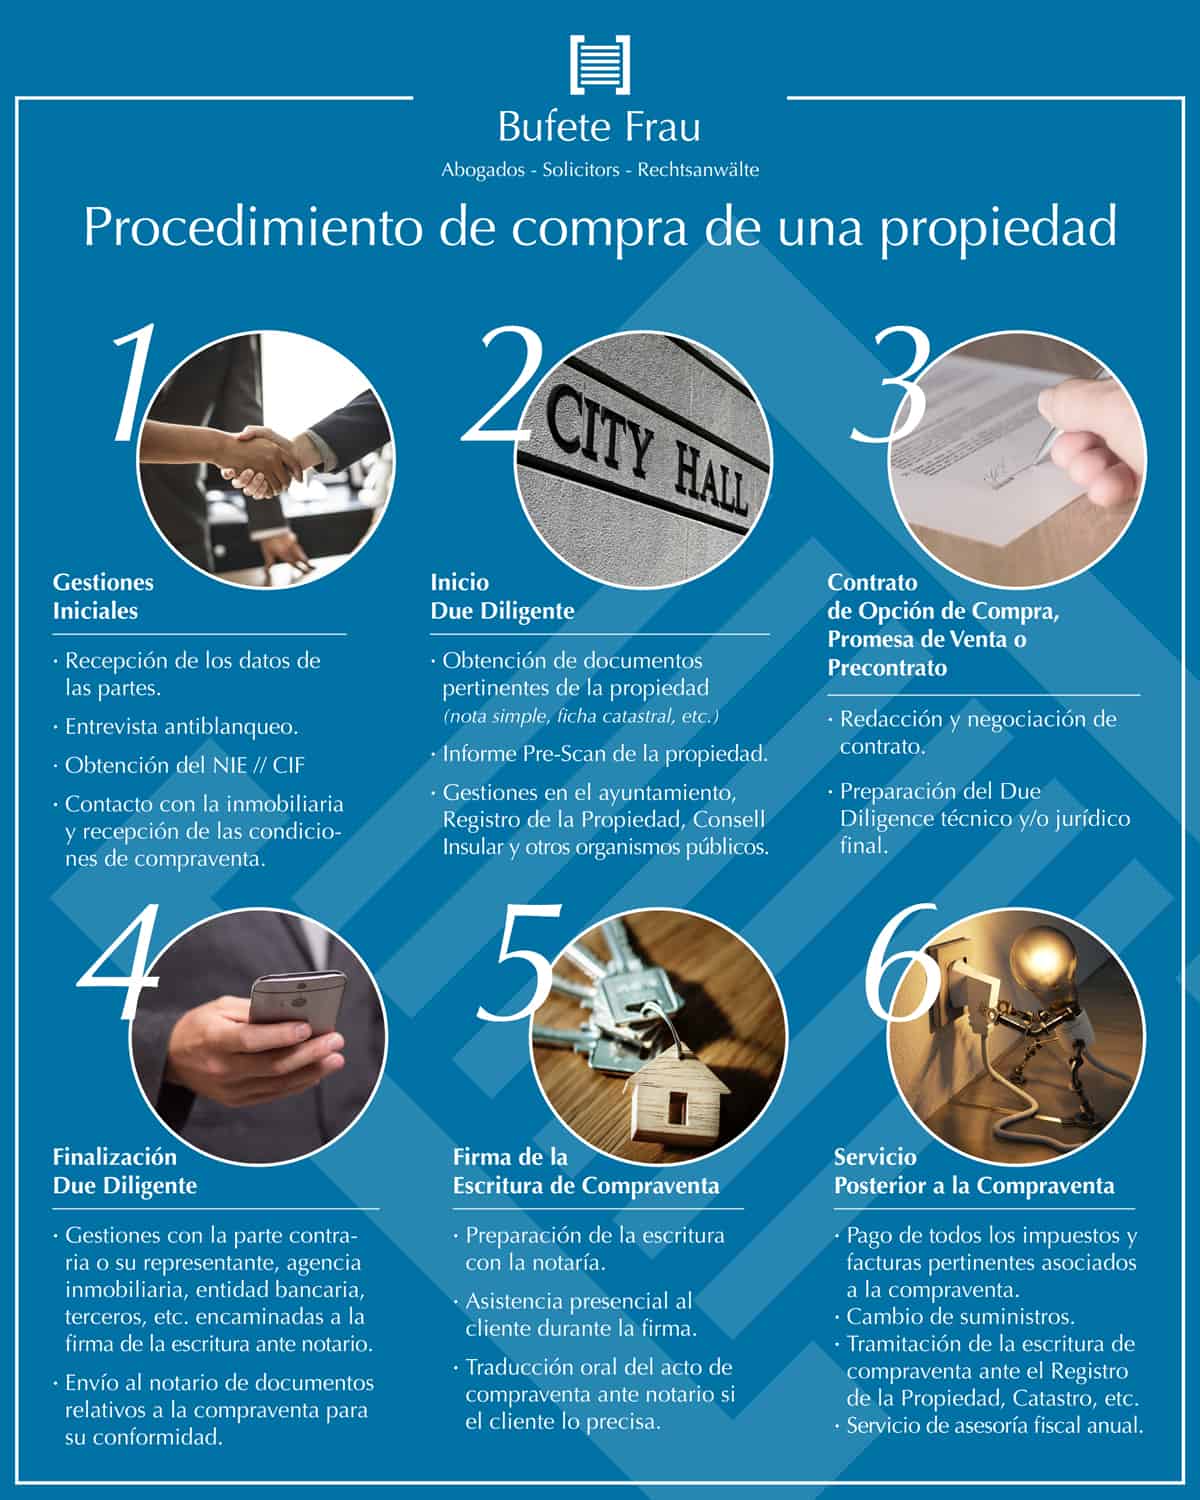 procedimiento de compra de una propiedad en espana bufete frau